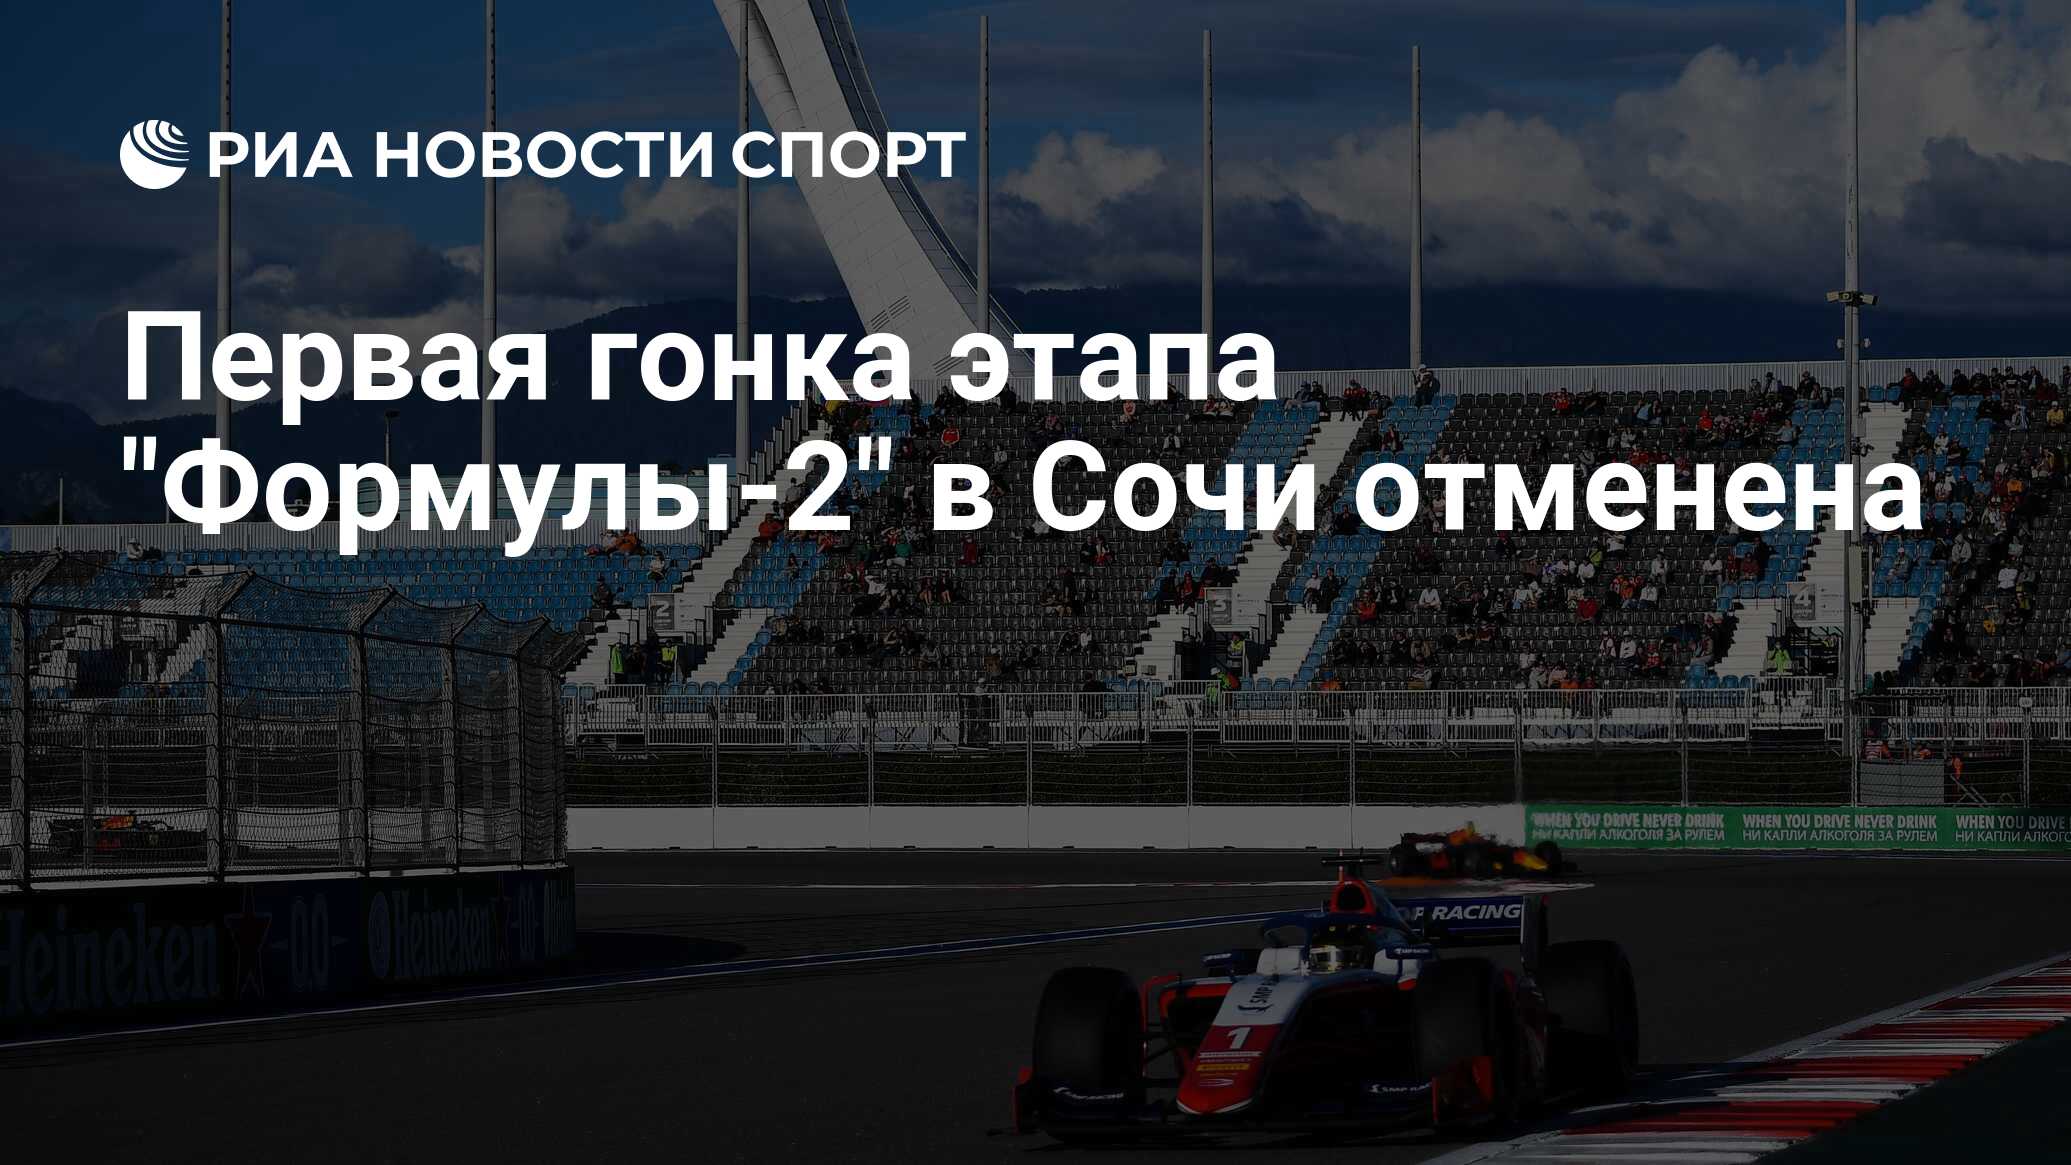 Результаты последнего этапа формулы 1. Формула 2 победа России. Трасса Лосаил формула 1 гонка 2021. Проведение этапа формула 1 было под вопросом.